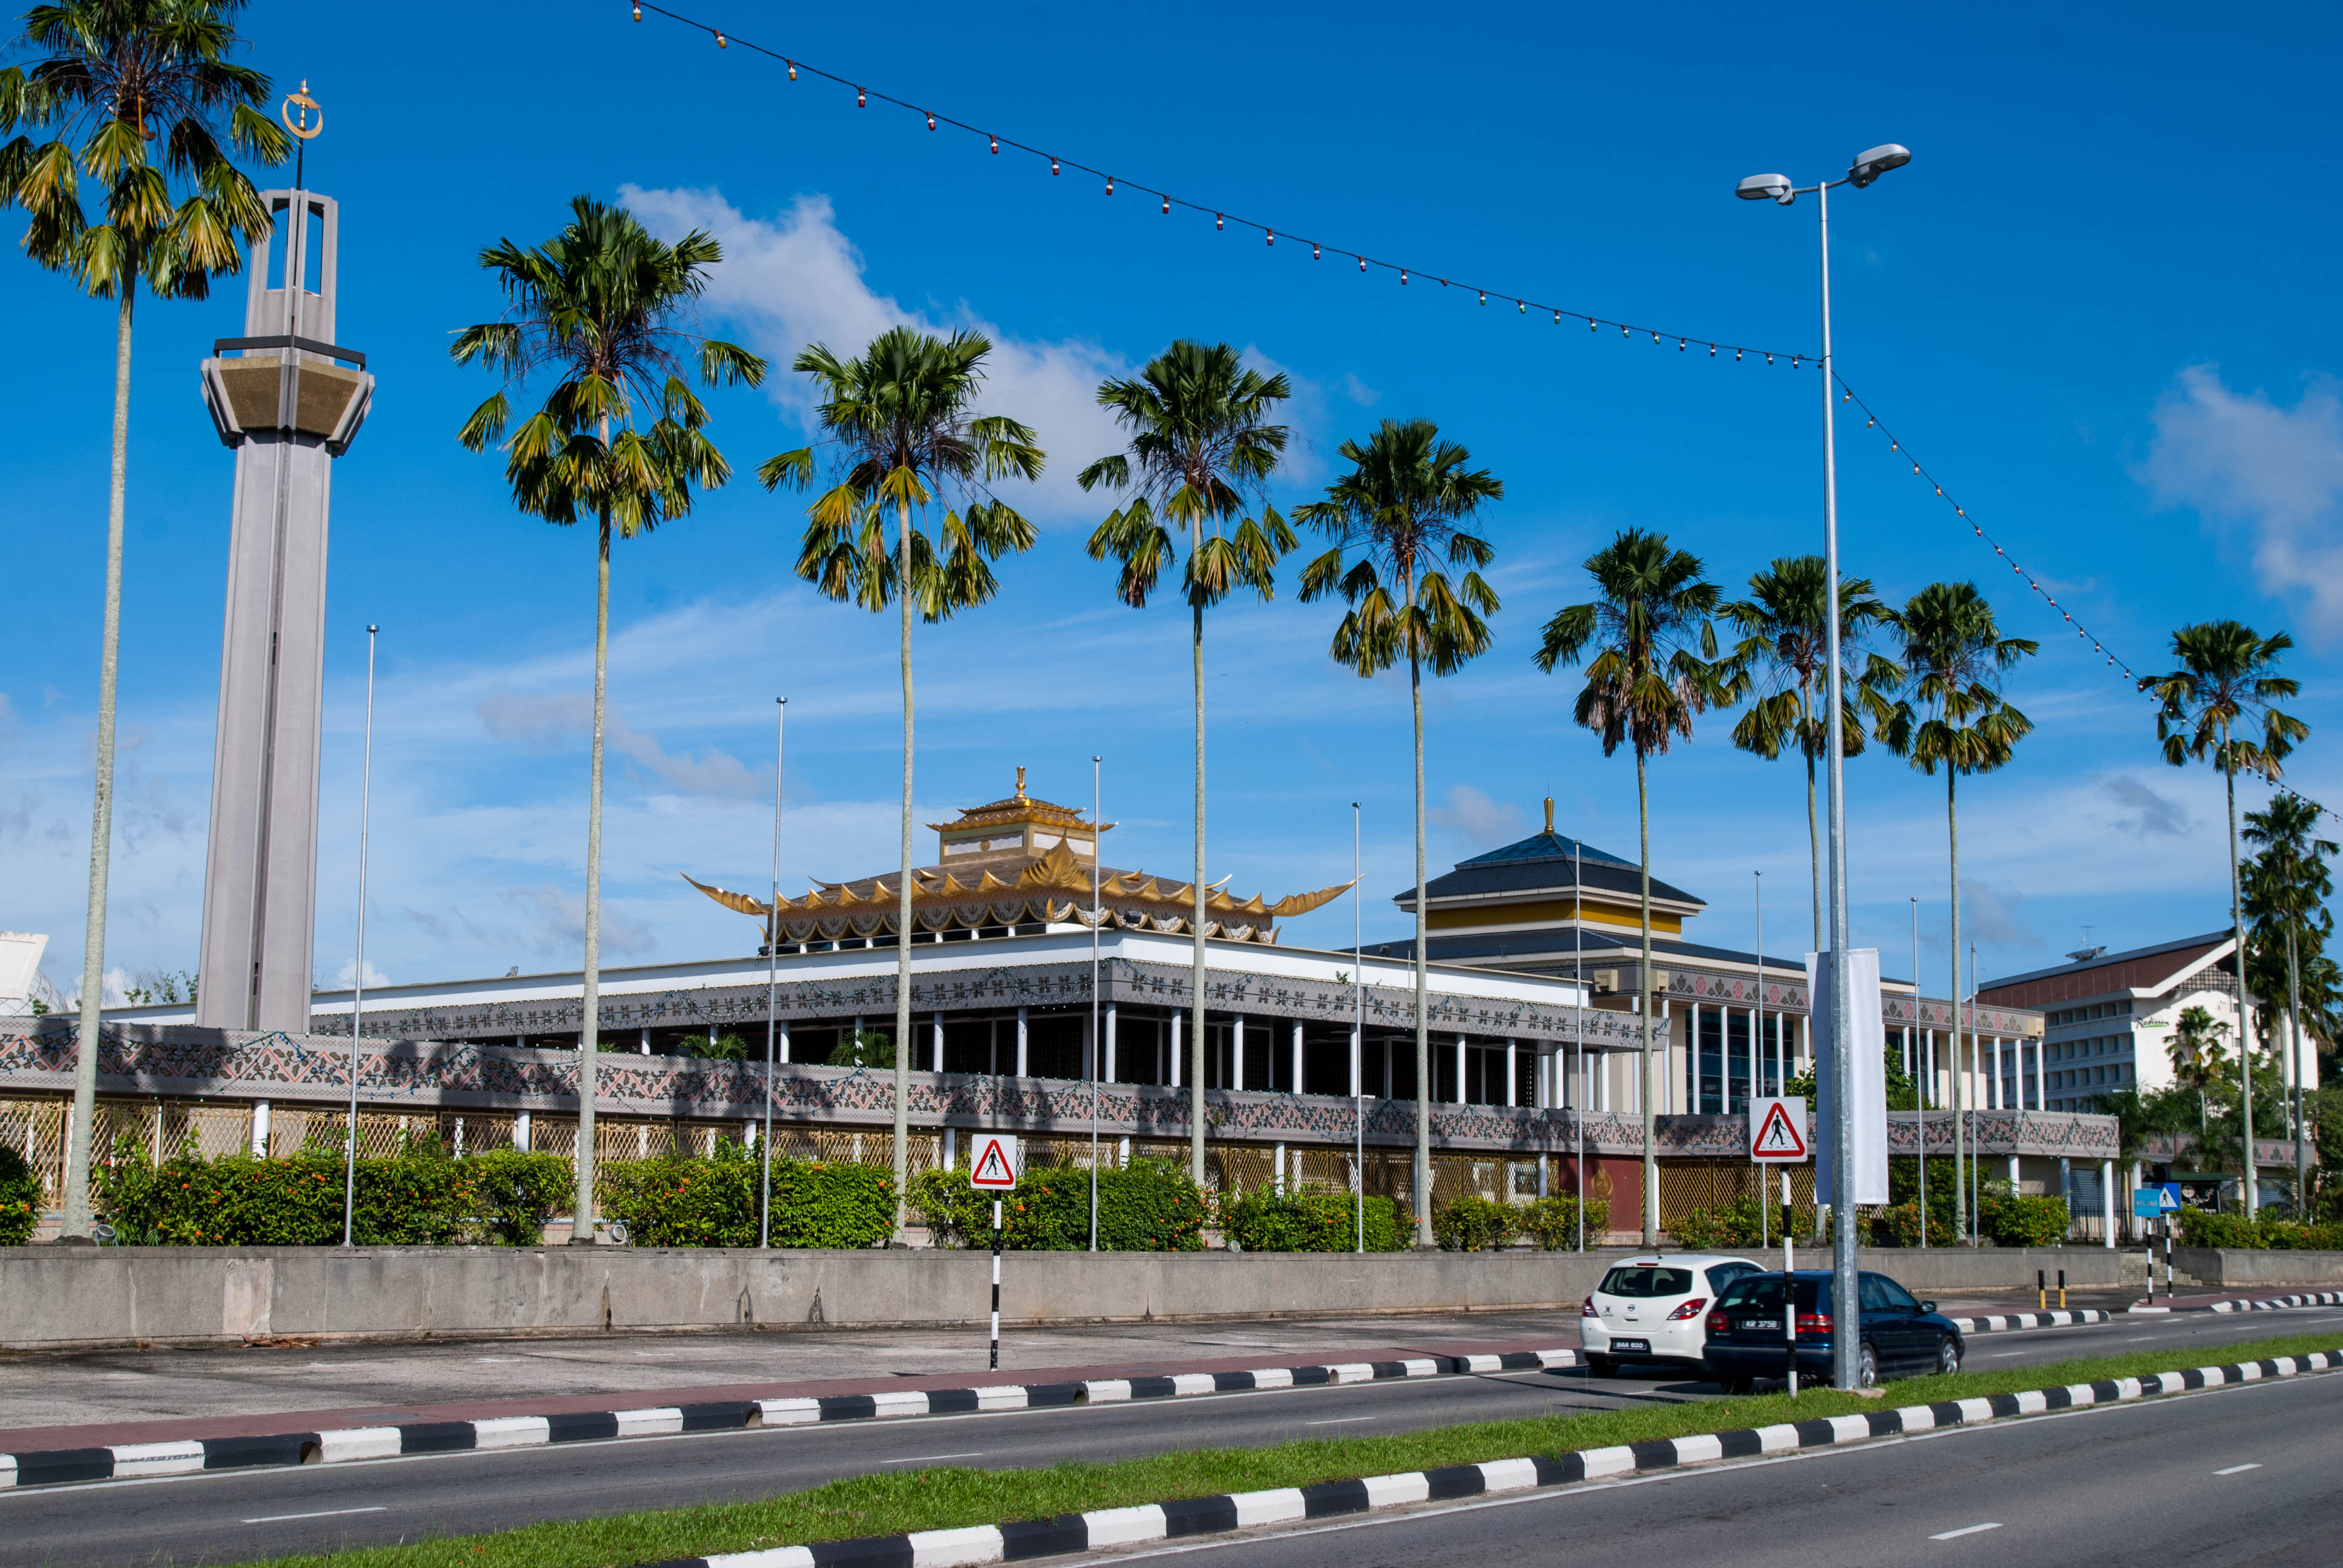 Berkunjung ke Brunei Darussalam, Negara Kecil namun Super Kaya